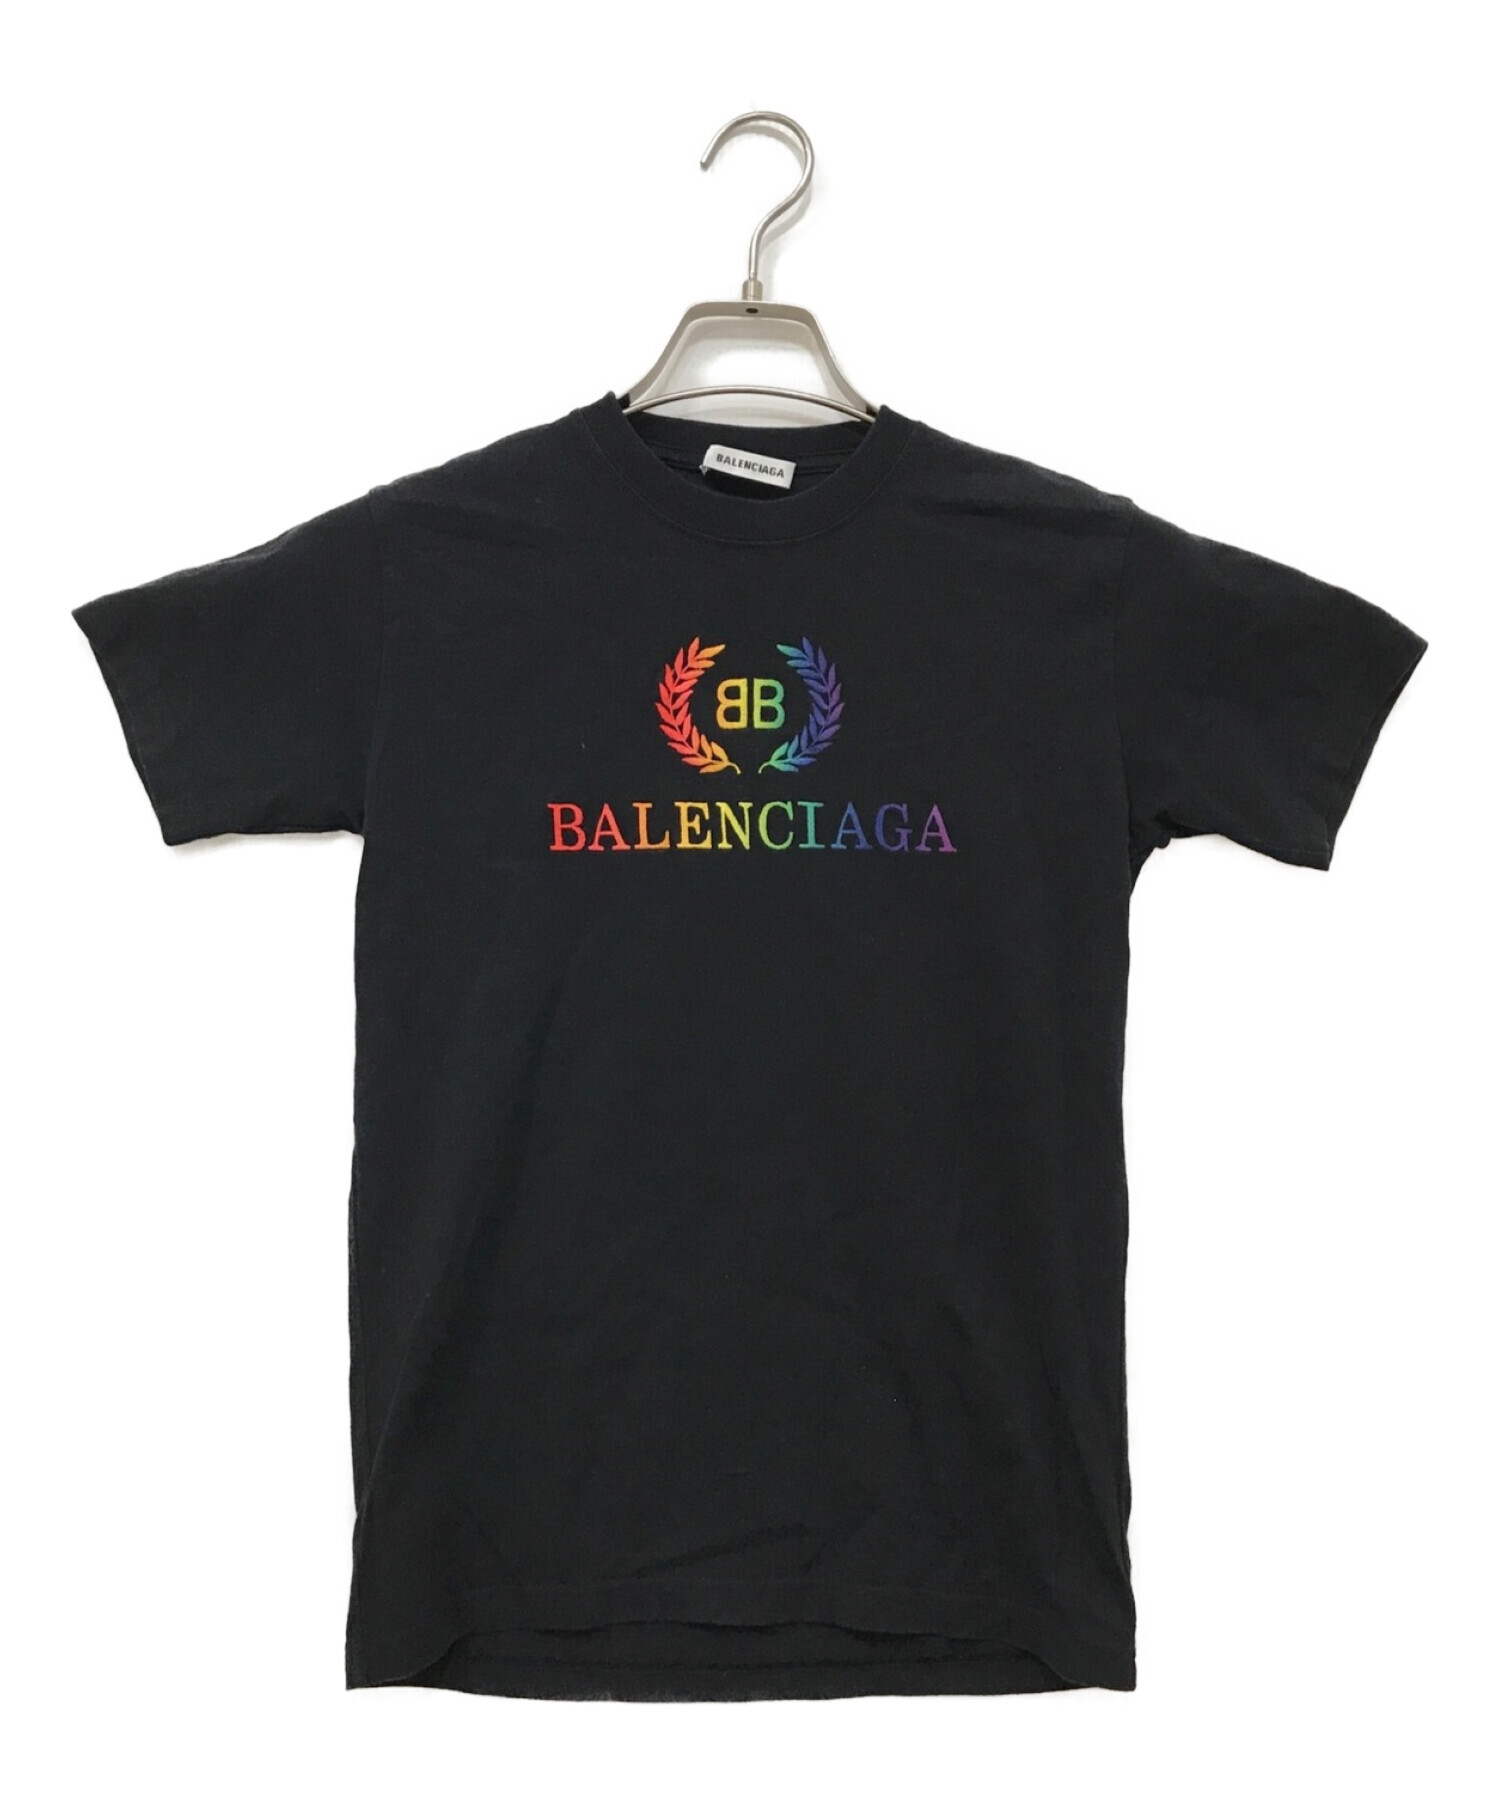 肩幅41cm『BALENCIAGA』 バレンシアガ (S) レインボーロゴ Tシャツ